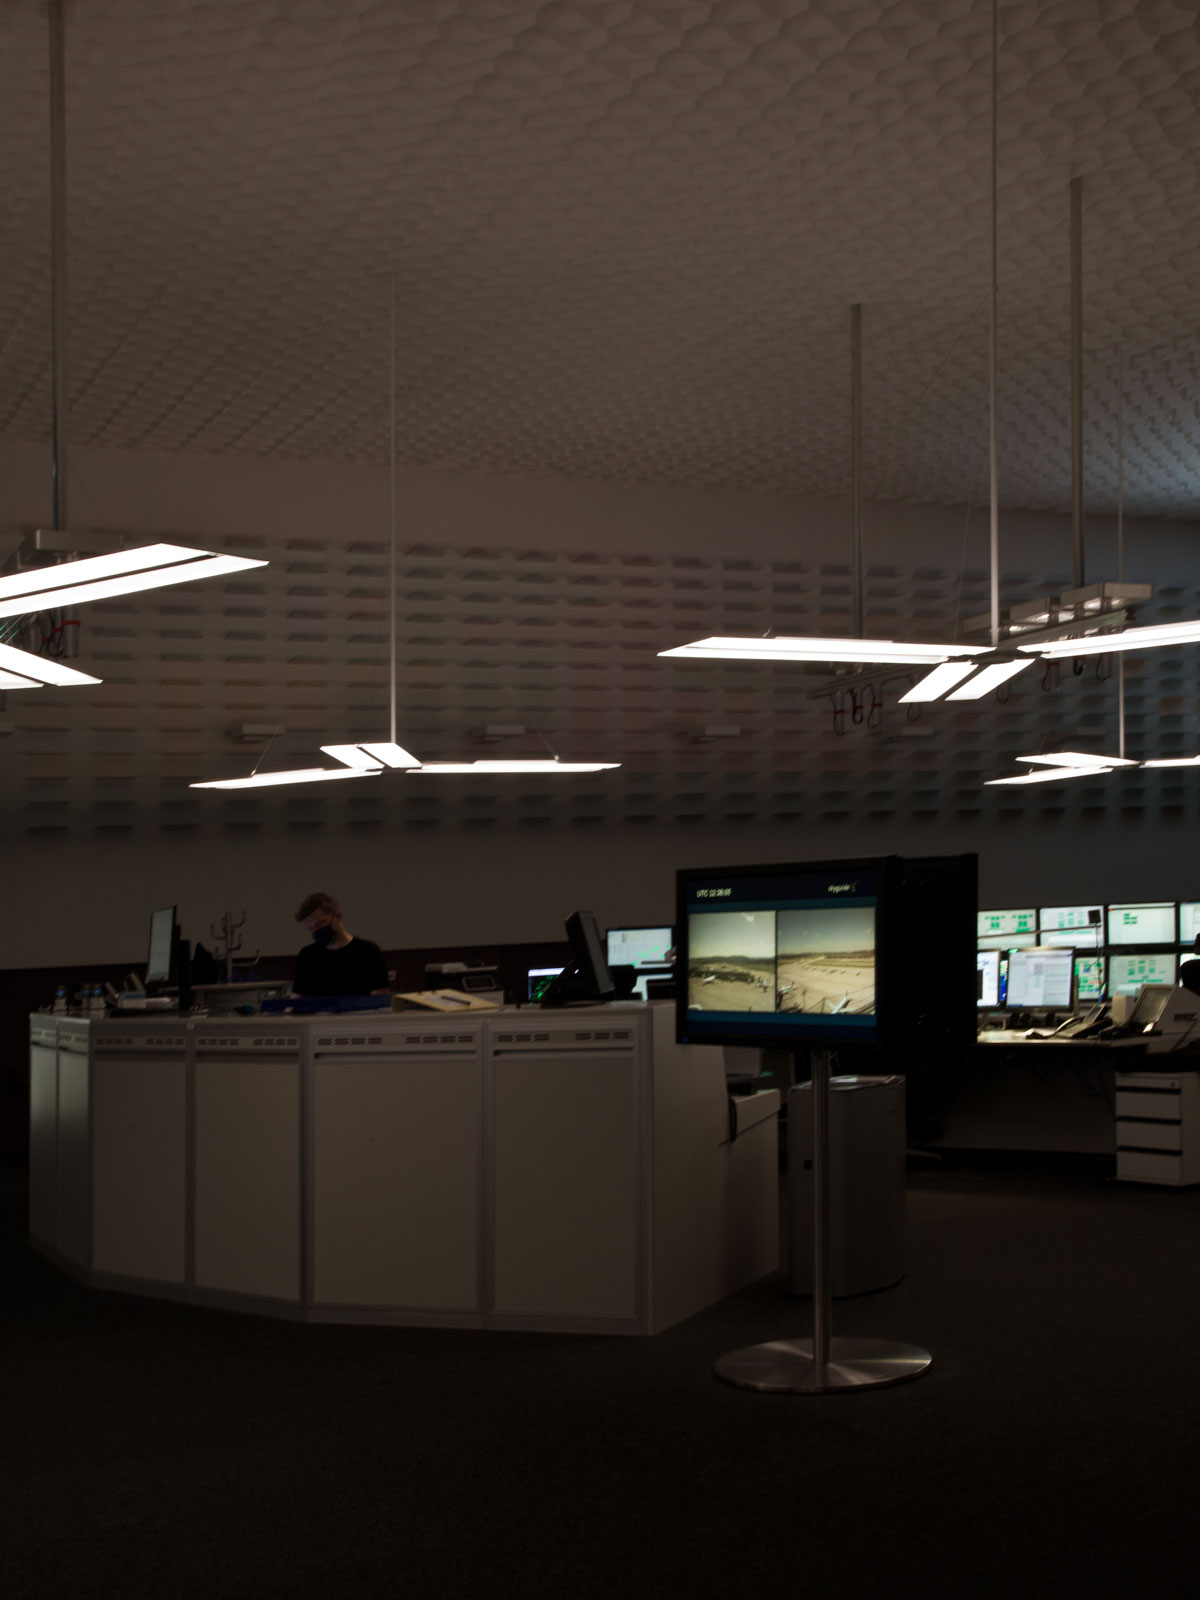 Lichtplanung, Skyguide, Kontrollzentrum, bei Dunkelheit